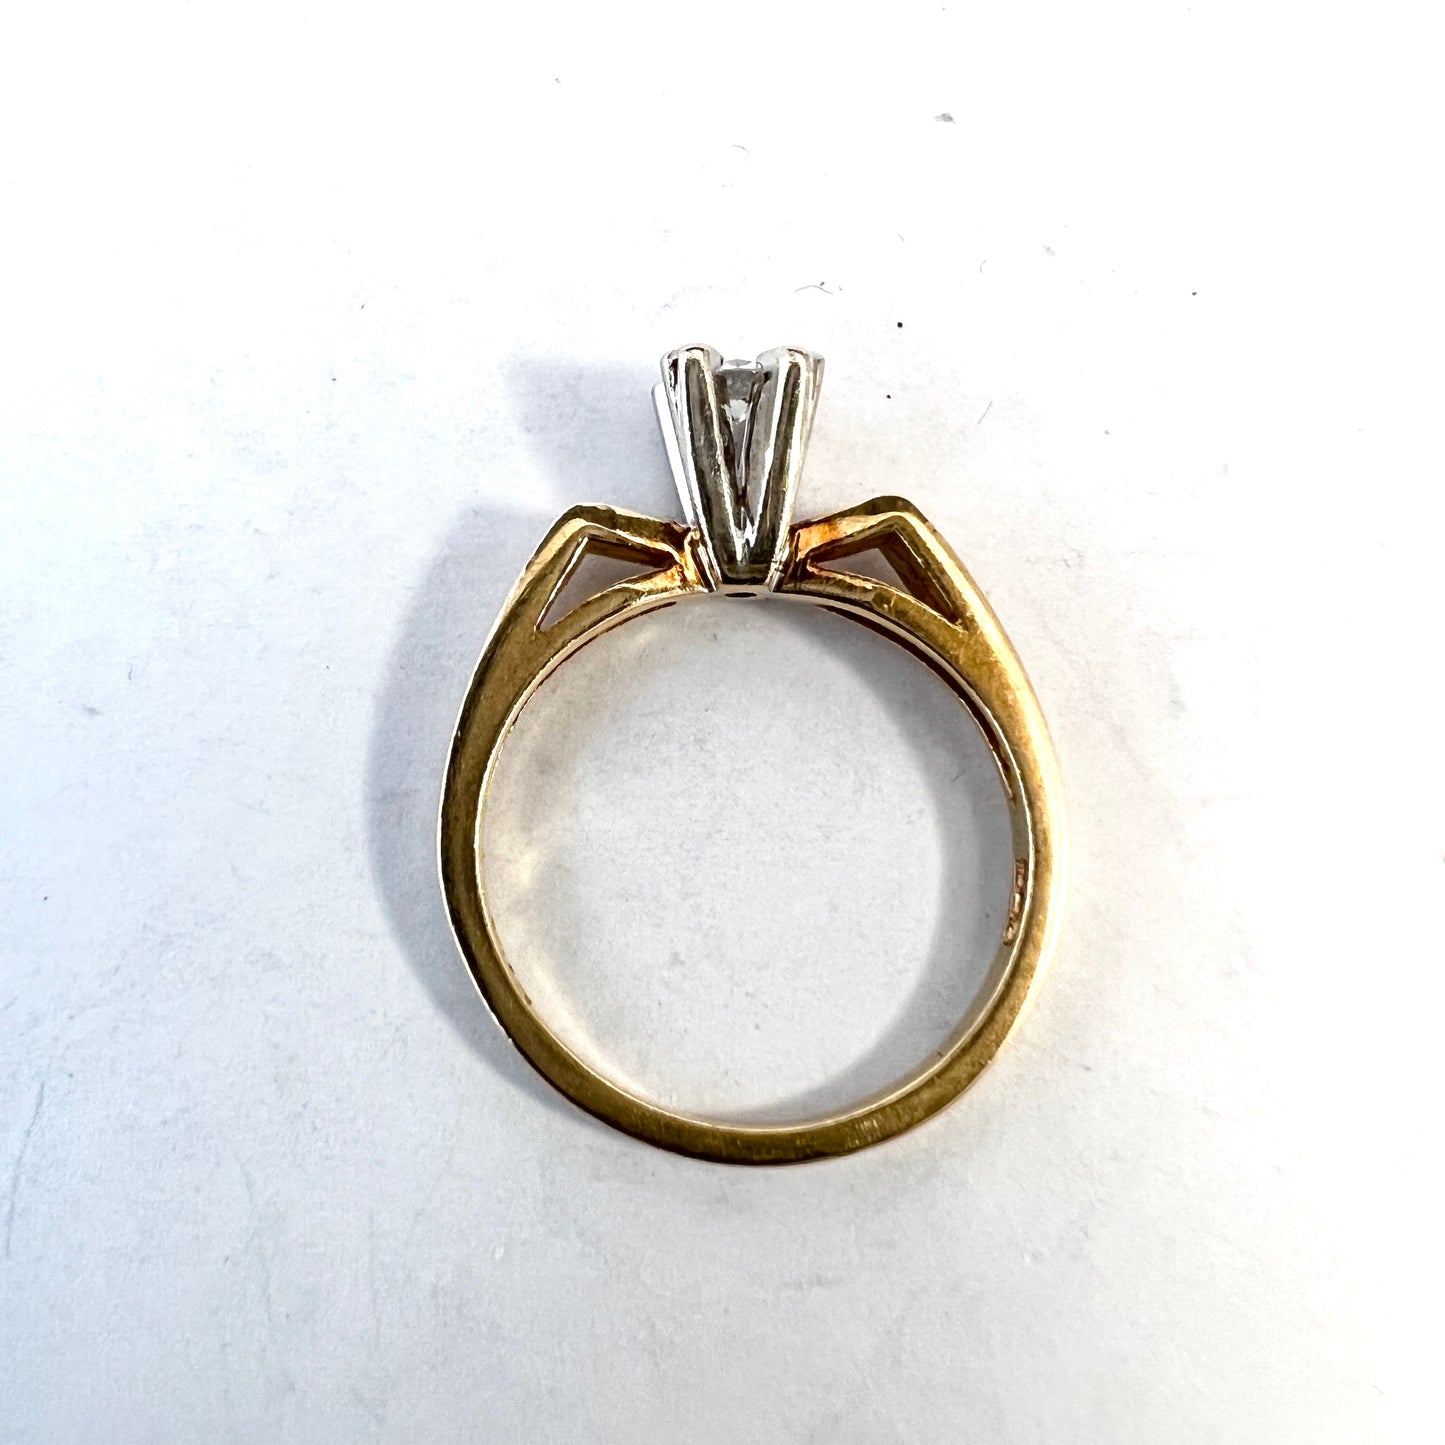 Kjeld Jacobsen, Denmark c 1950s. Mid-century Modern 14k Gold Diamond Ring.